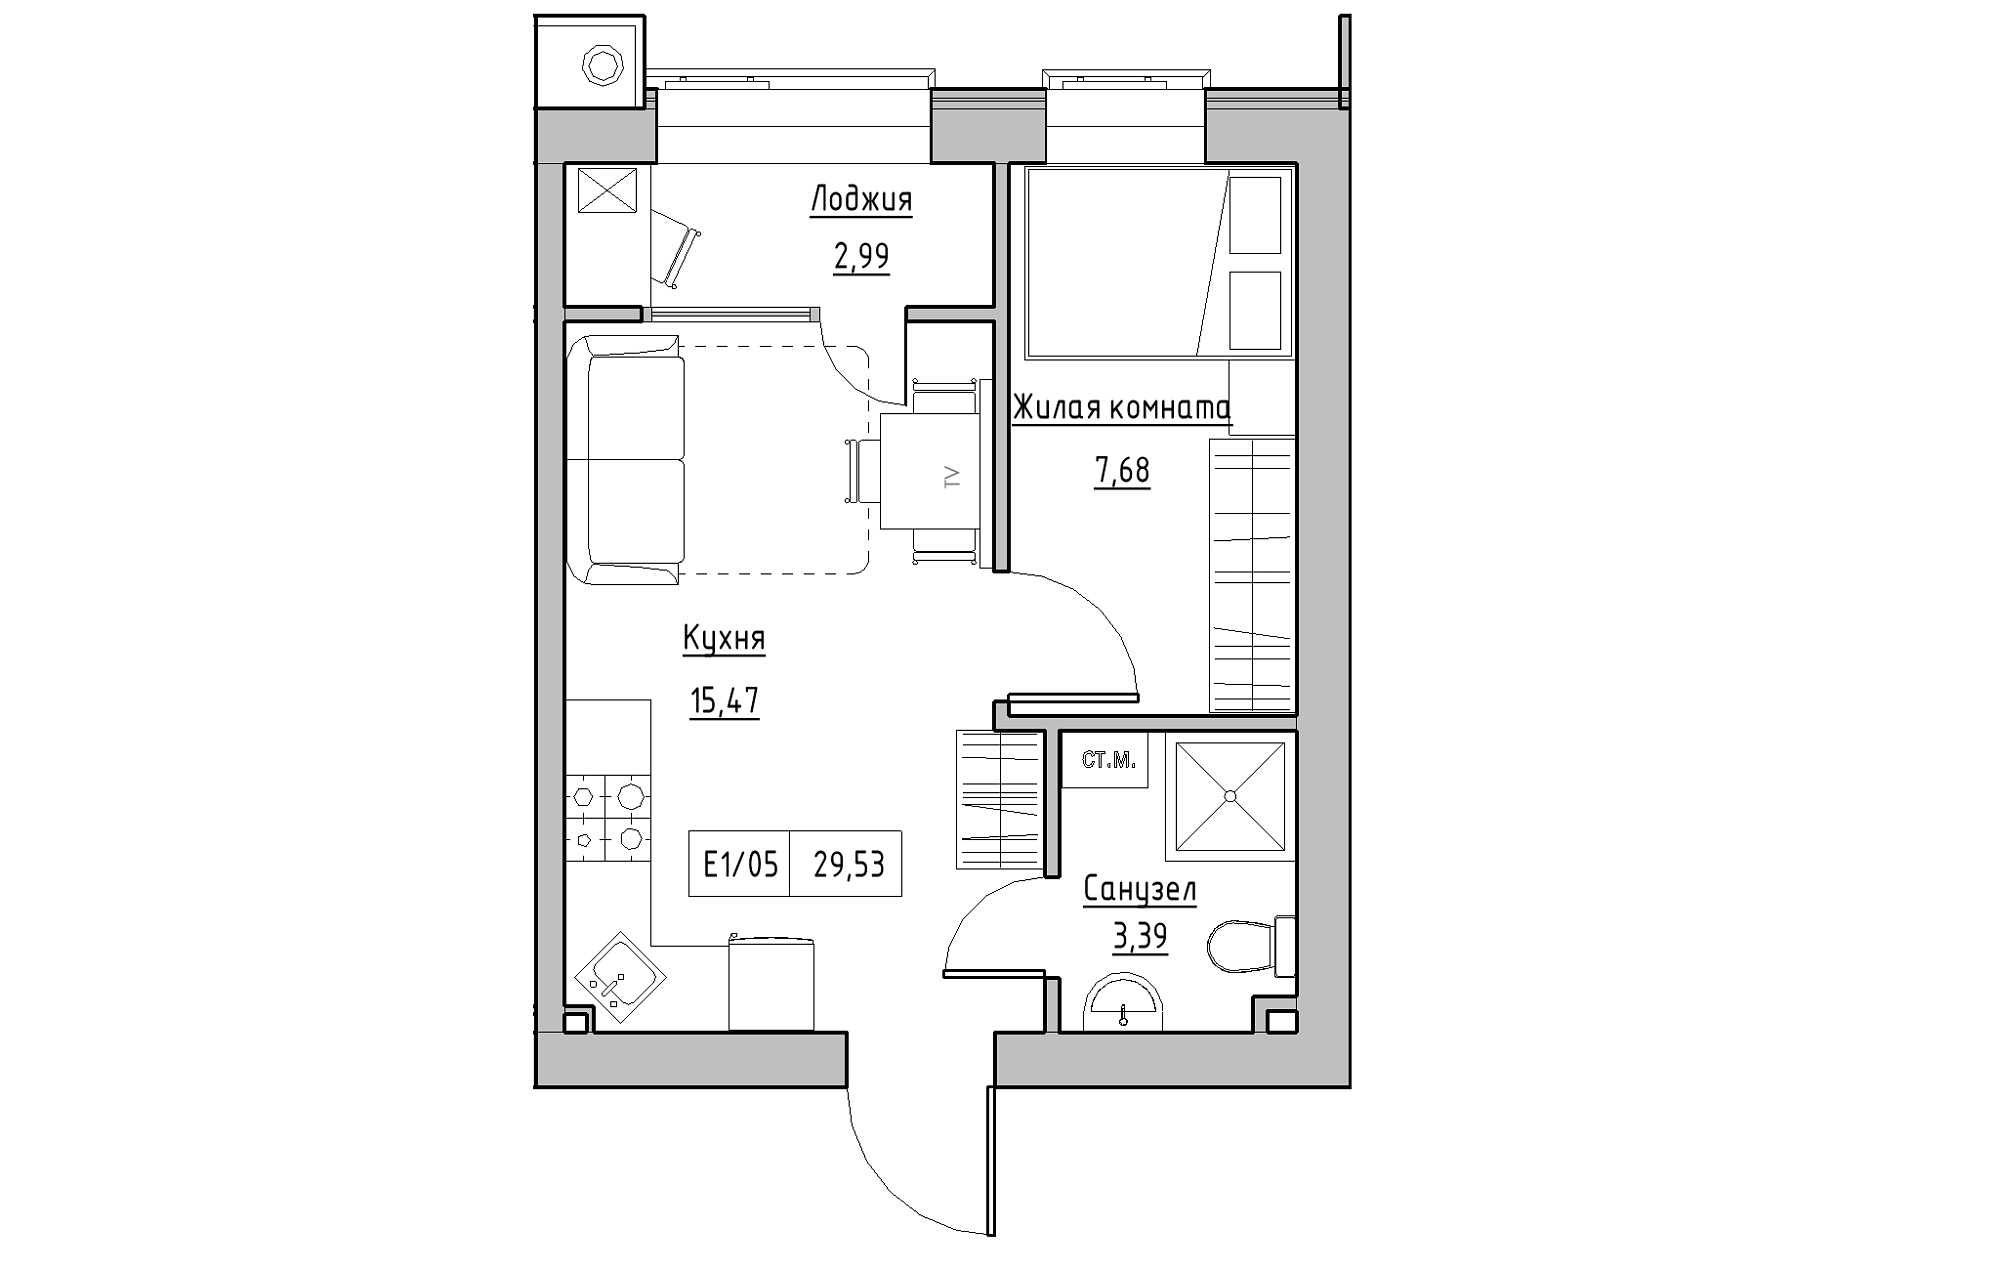 Планировка 1-к квартира площей 29.53м2, KS-013-03/0008.